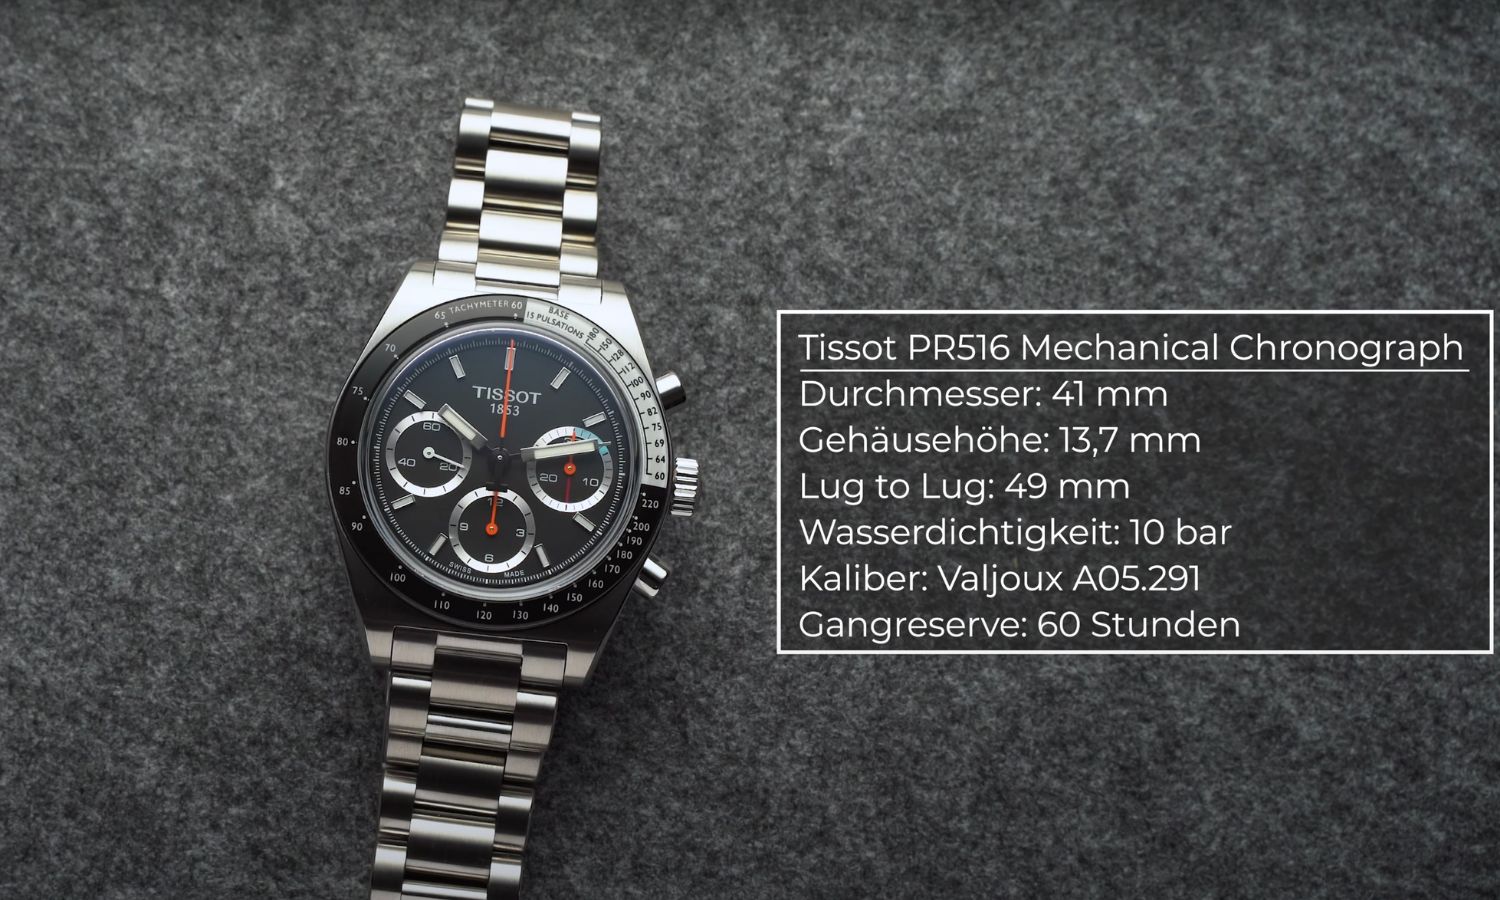 Tissot PR516 Mechanical Chronograph liegend vor grauem Hintergrund